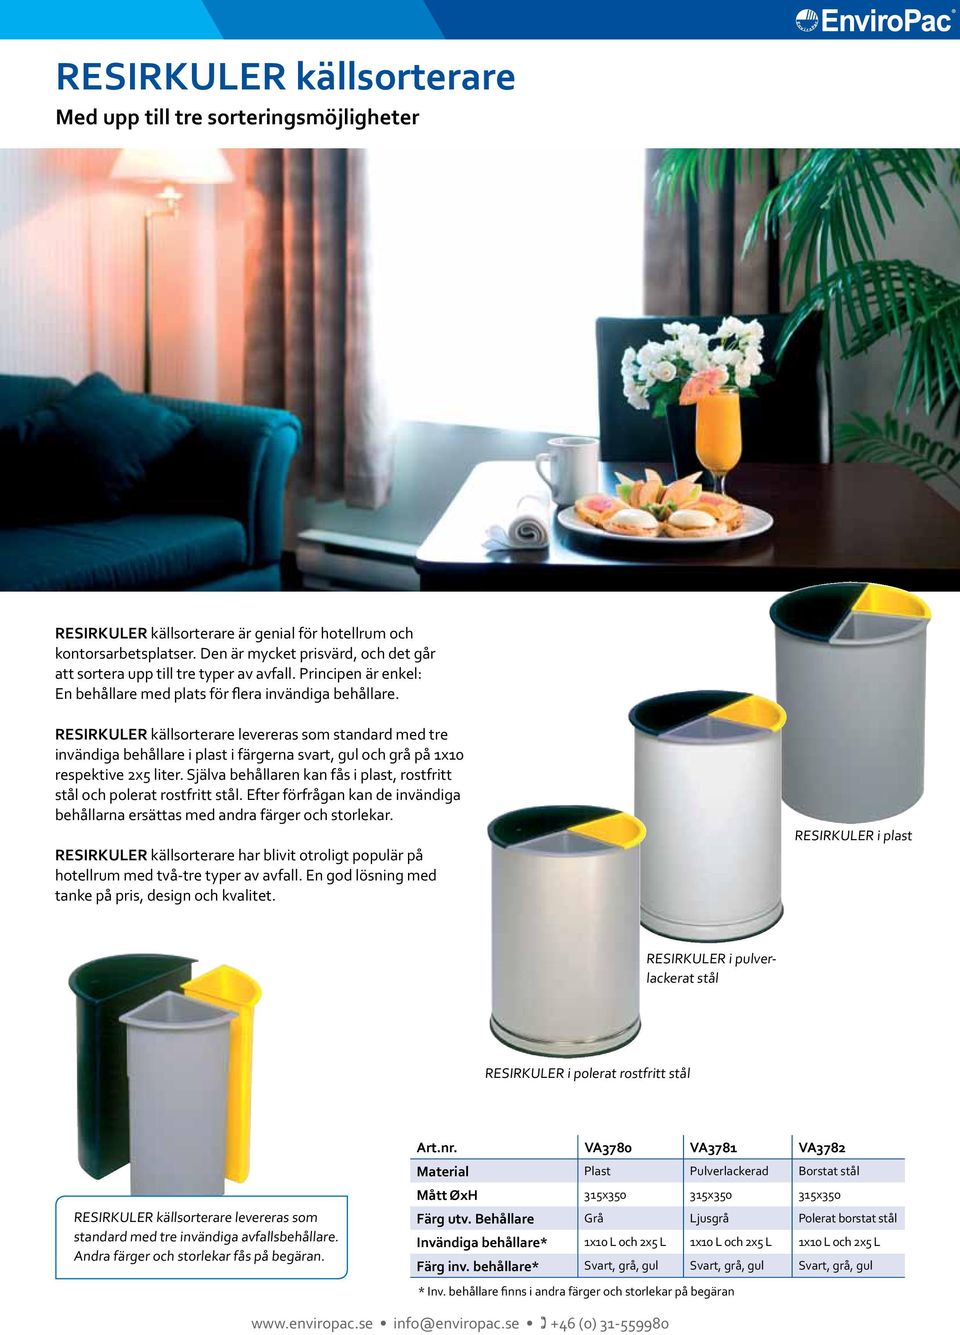 RESIRKULER källsorterare levereras som standard med tre invändiga behållare i plast i färgerna svart, gul och grå på x0 respektive x liter.